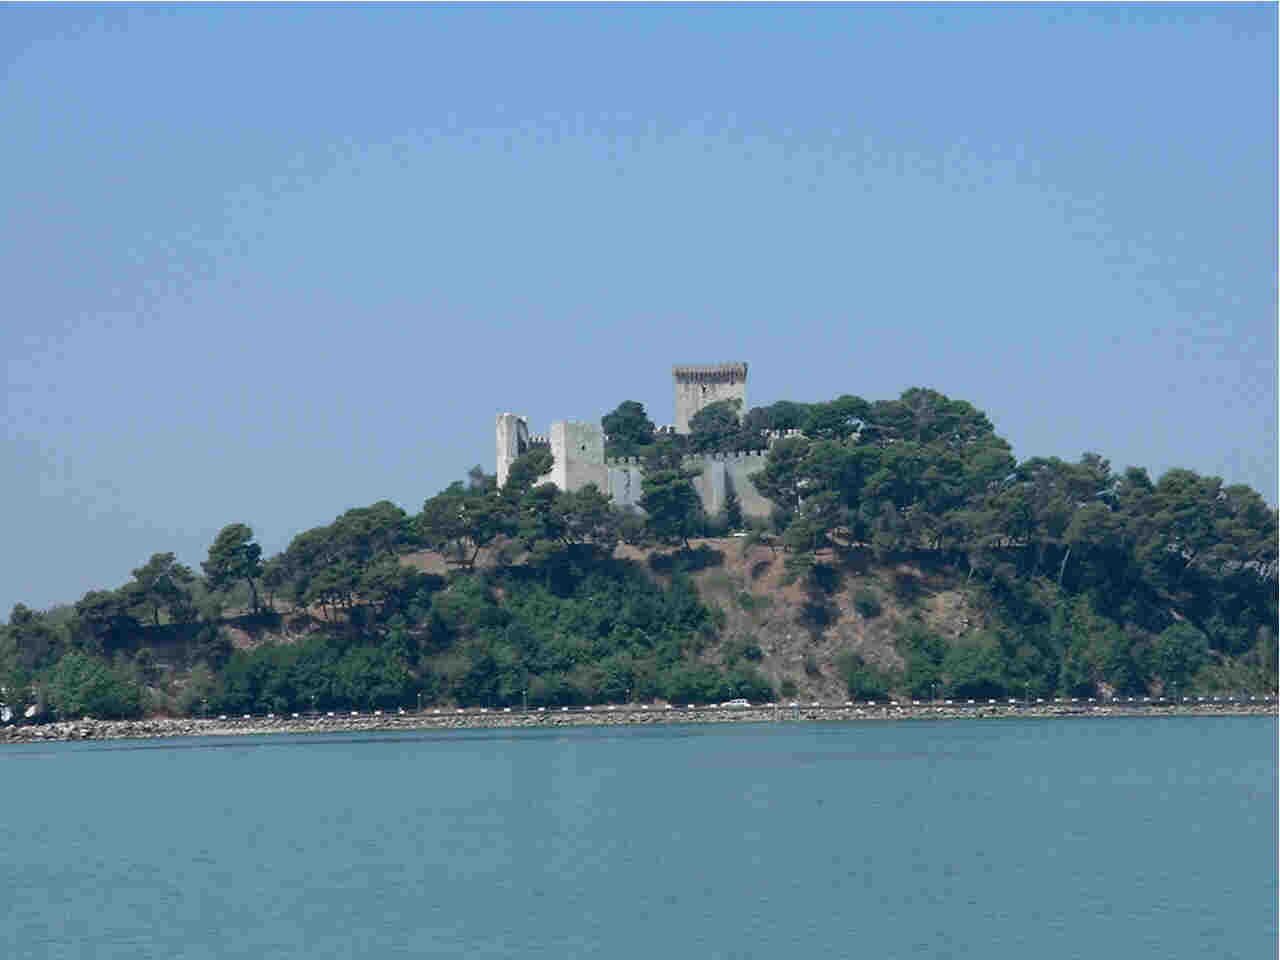 The castle of Castiglione del Lago